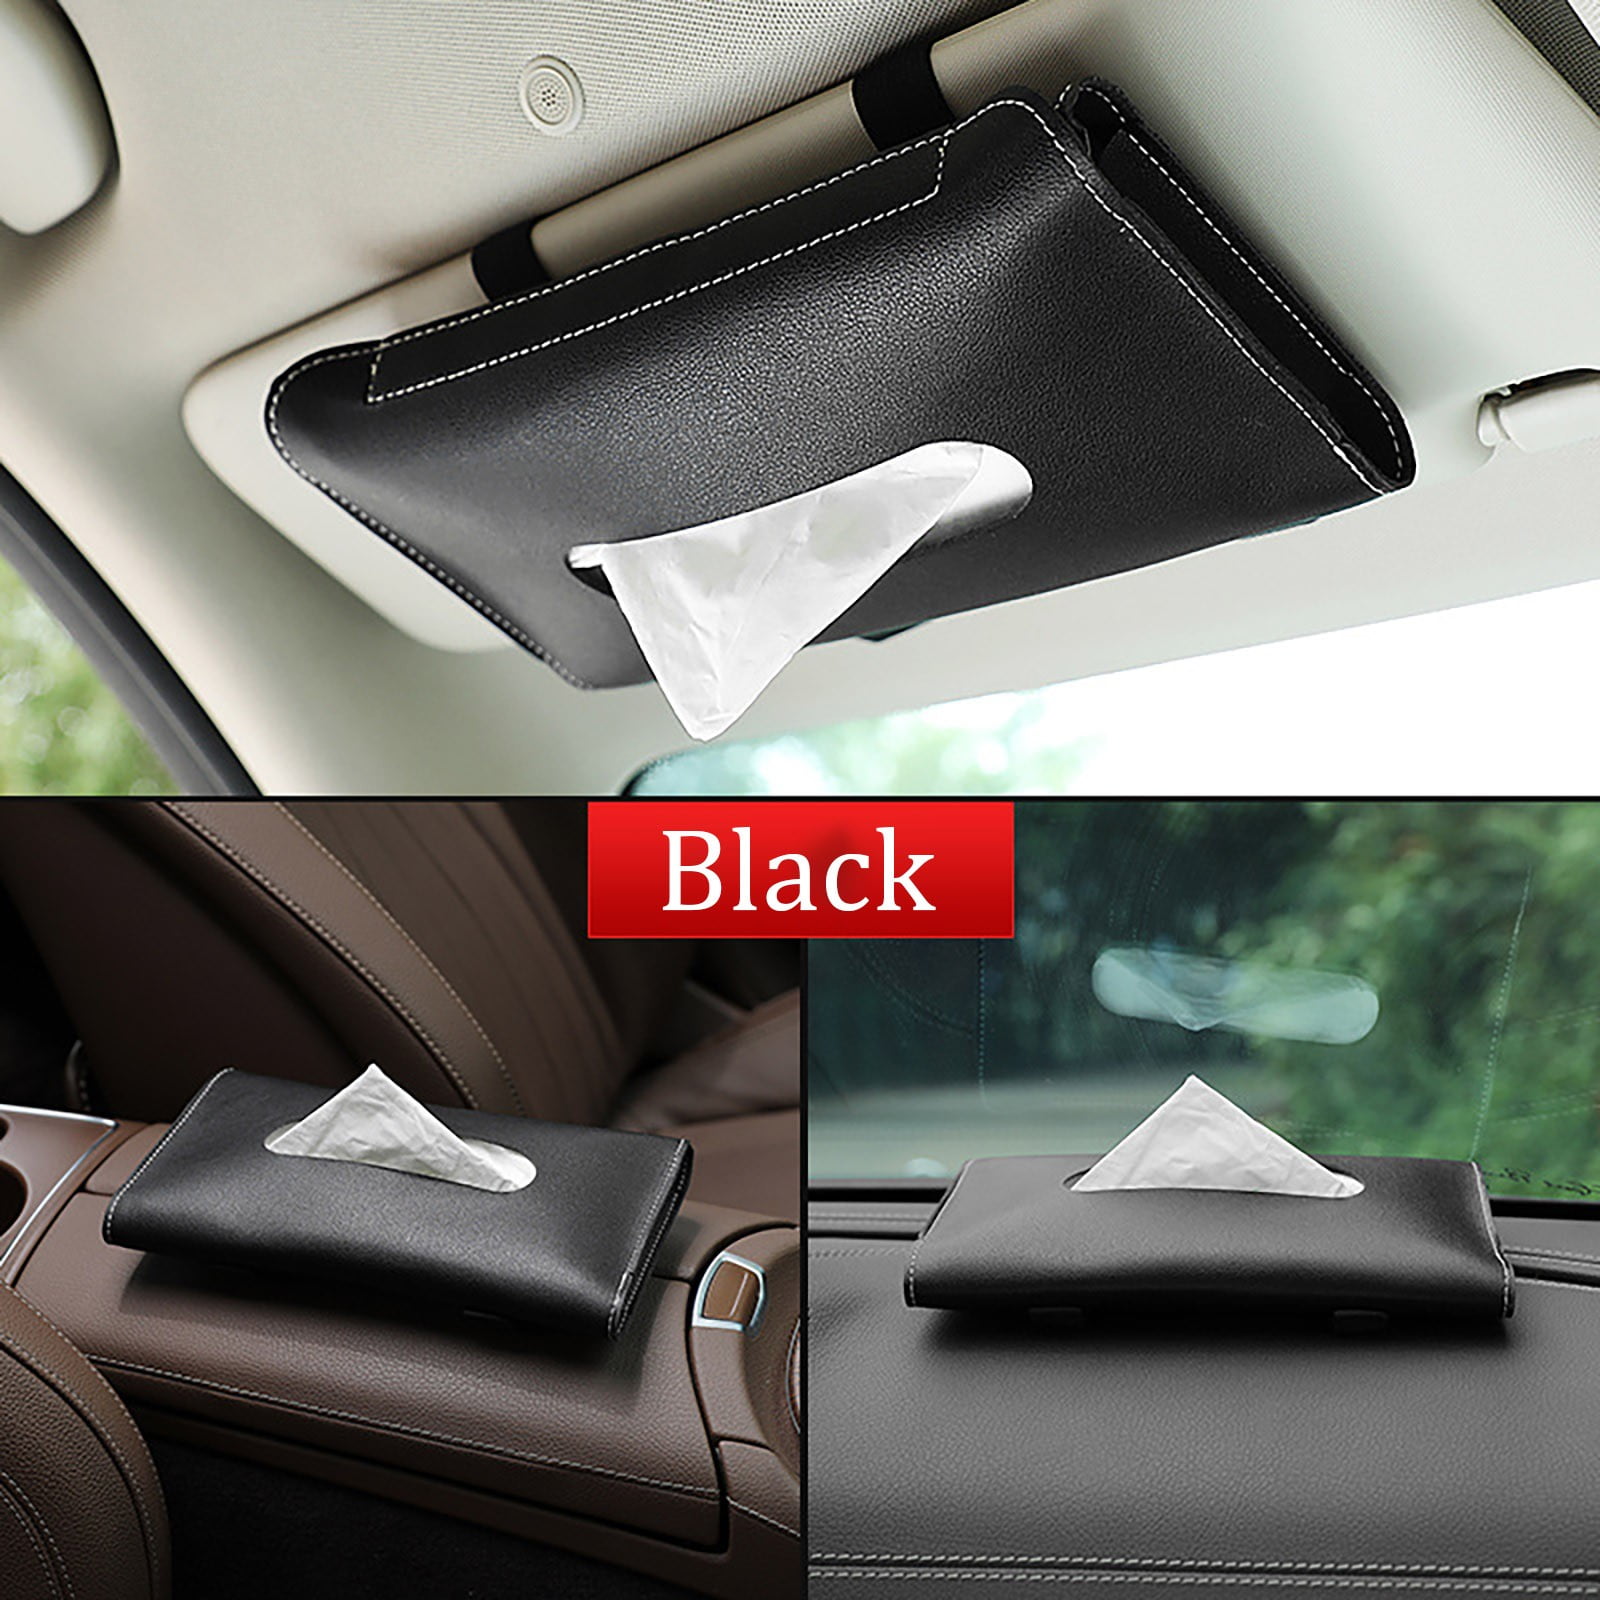 ZKONMEN Car Tissue Holder Sun Visor Napkin Holder Car Visor Tissue Holder Premium Leather Backseat Tissue Case Holder for Car